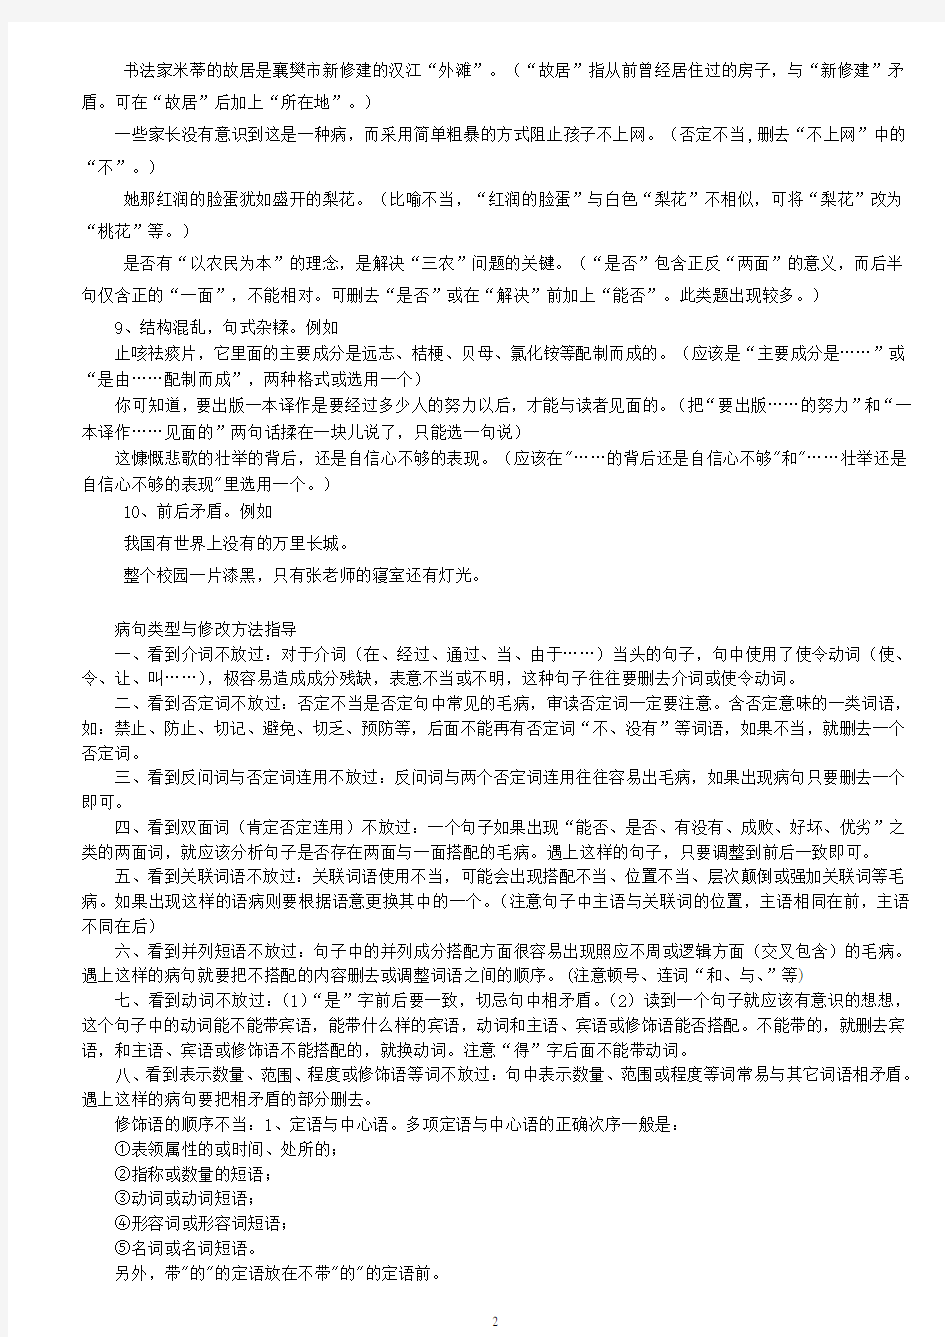 (2013年)初中语文常见病句类型例析